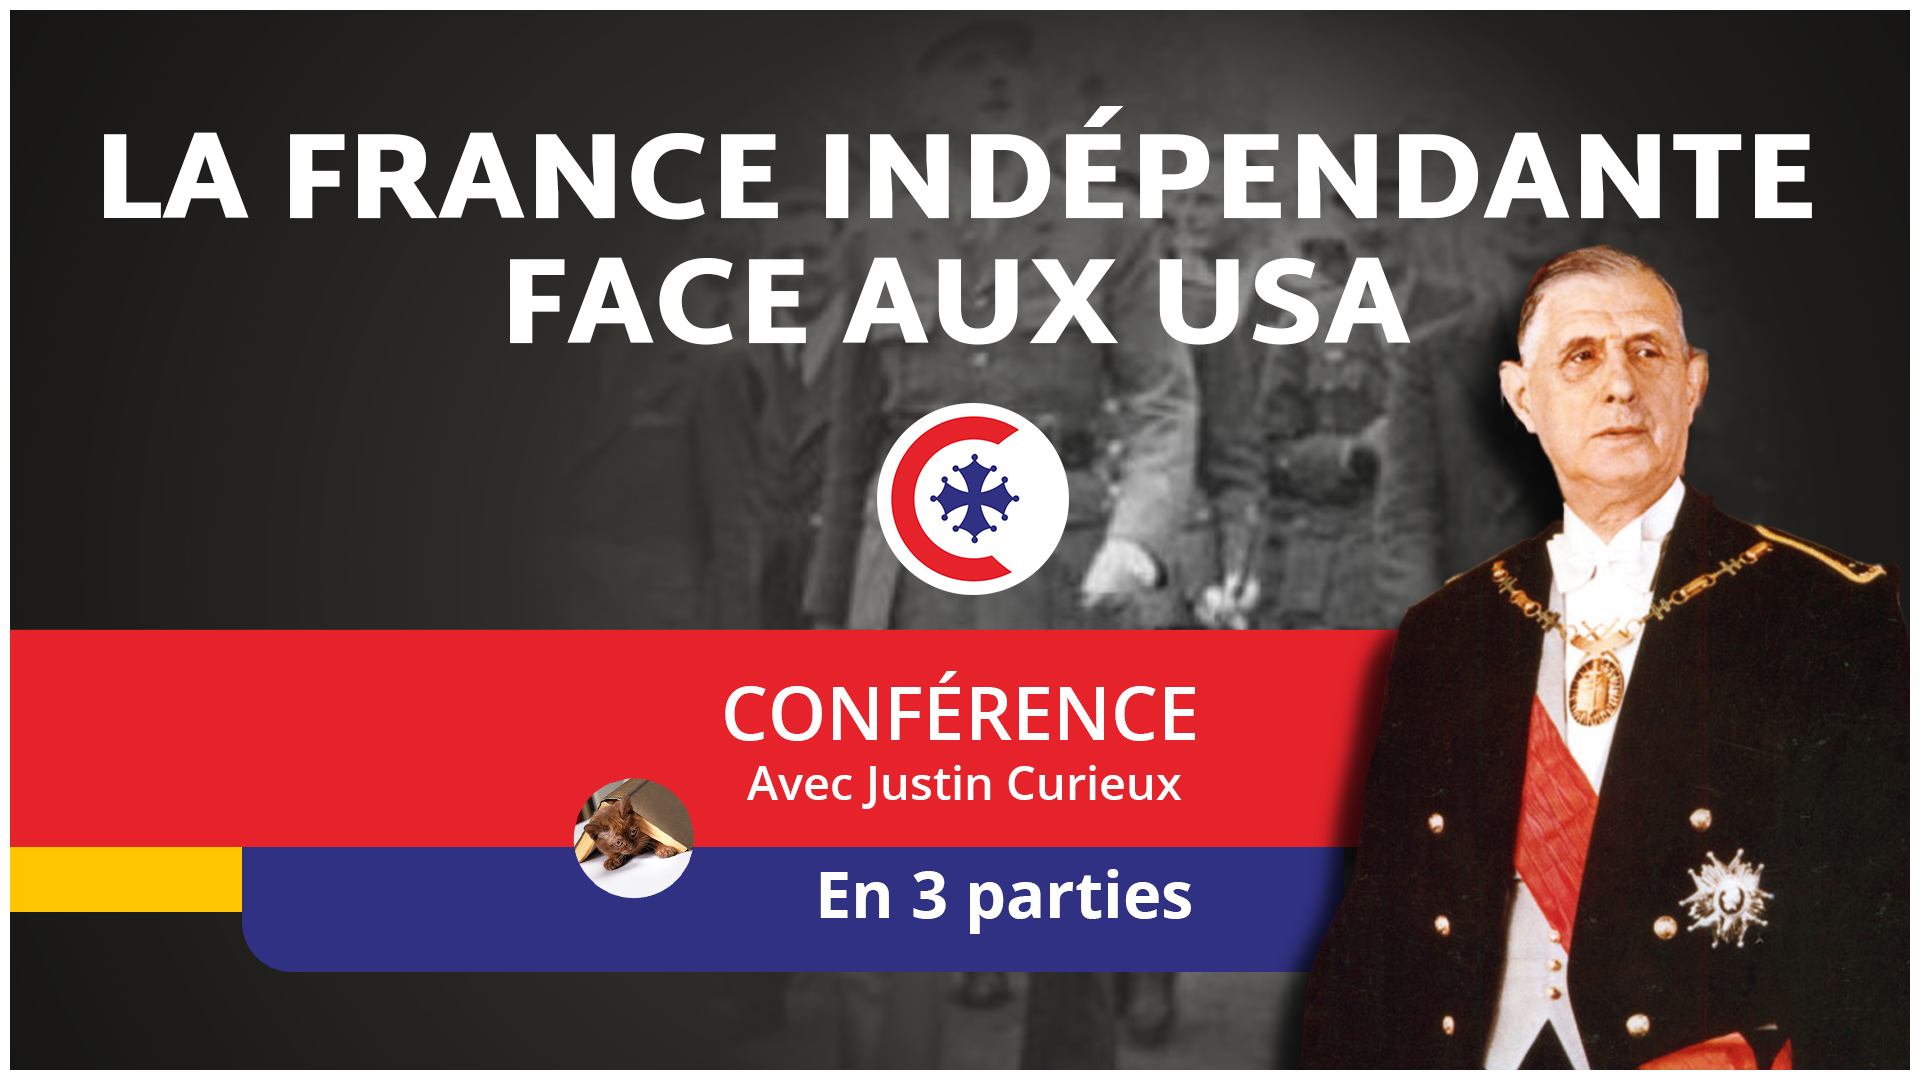 La France indépendante face aux USA